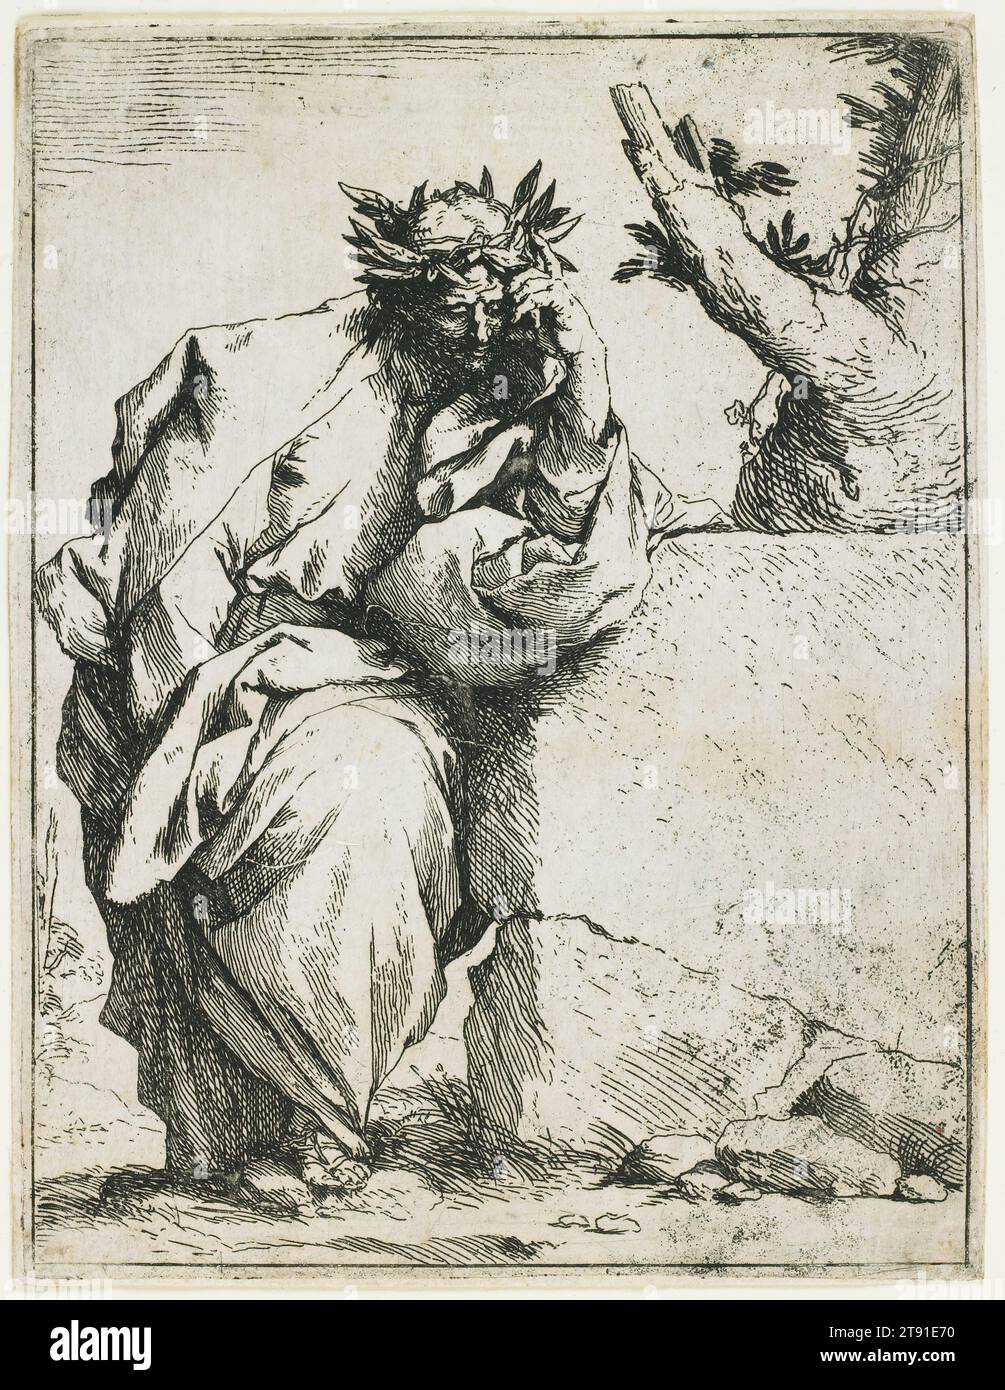 Der Dichter, ca. 1620-1621, Jusepe (Giuseppe) de Ribera; Künstler: Jusepe de Rivera, Italienisch, Spanisch, ca. 1590-1652, 6 3/16 x 1/2 cm. (15,72 x 11,43 cm) (Platte), Ätzen, Italien, 17. Jahrhundert, die führende Figur der neapolitanischen Malerei, Jusepe de Ribera hatte auch eine intensive, aber kurzlebige Faszination für das Ätzen. Dieser Dichter - möglicherweise Virgil oder Dante - schlägt die vertraute Pose der grausamen, melancholischen Figur an: Kopf an Hand, schattiges Gesicht, nachdenklicher Ausdruck. Man glaubte, dass solche Individuen fast göttlich brillant wären, aber gleichzeitig waren sie traurig an ihre irdischen Grenzen gebunden Stockfoto